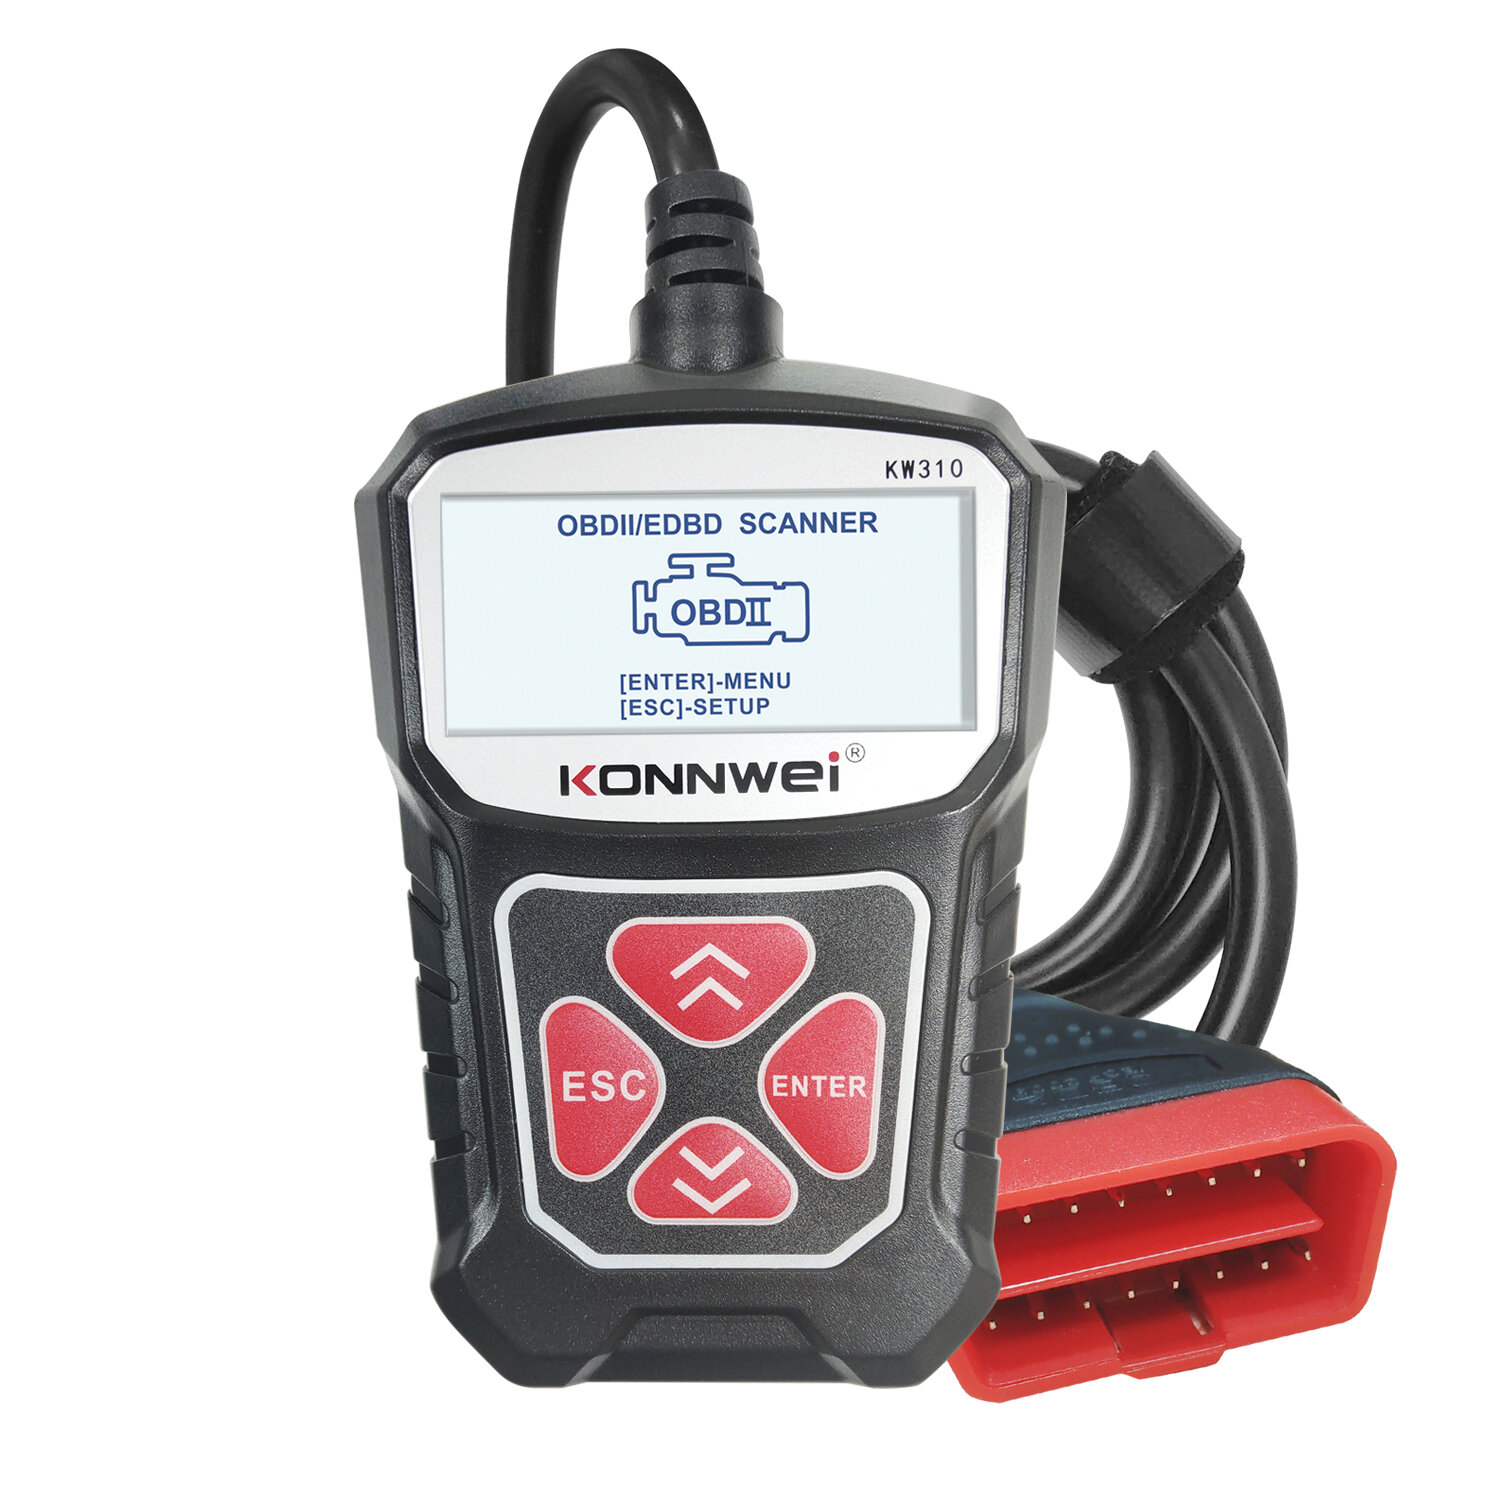 

KONNWEI KW310 OBD2 Car Diagnostic Scan Tool EOBD Scanner DTC Engine Code Reader Voltage Test Built-in Speaker